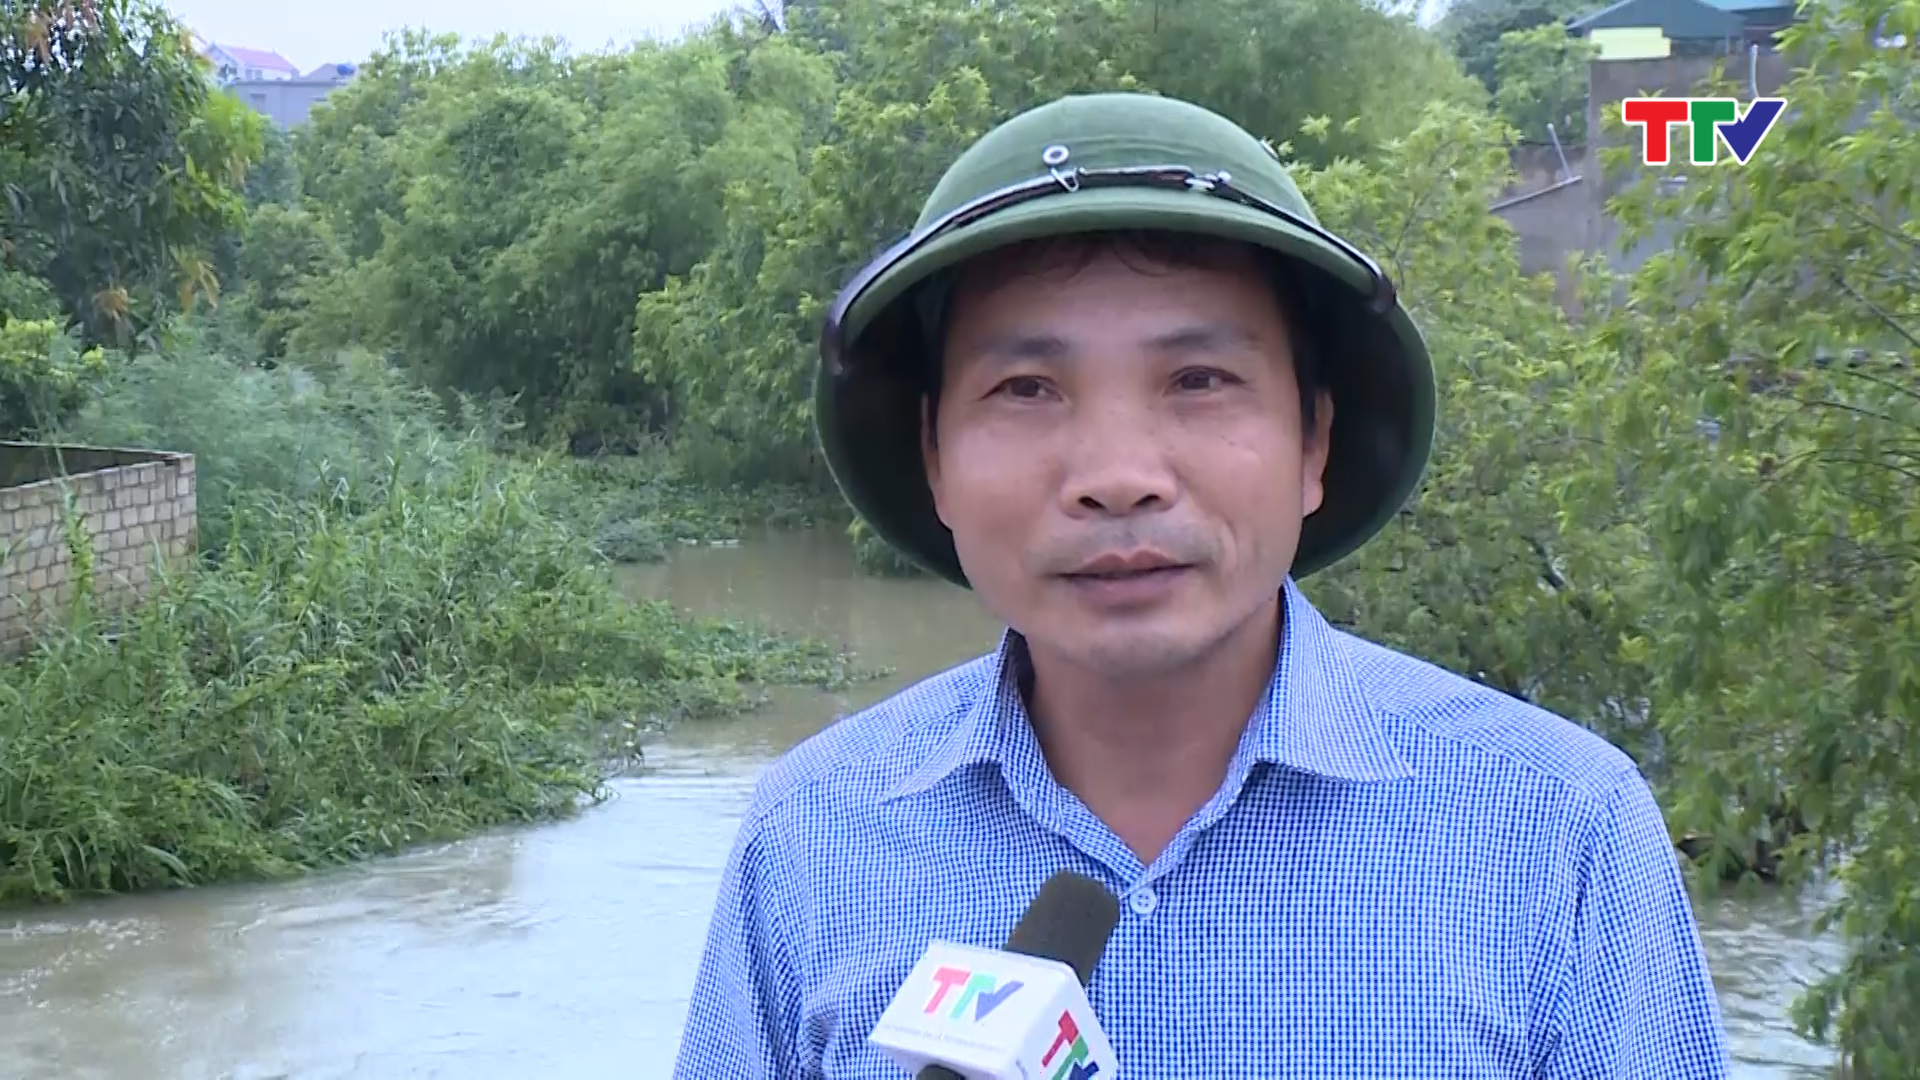 <br>Ông Bùi Minh Tâm, cán bộ Chi nhánh thuỷ nông Hà Trung: Đây là vùng trũng nên mưa lớn hơn 200 mm đã gây ngập lớn. Để bảo vệ cây trồng chúng tôi đã thực hiện bơm tiêu trước đó và hiện tại vẫn vận hành 100% máy bơm nước.